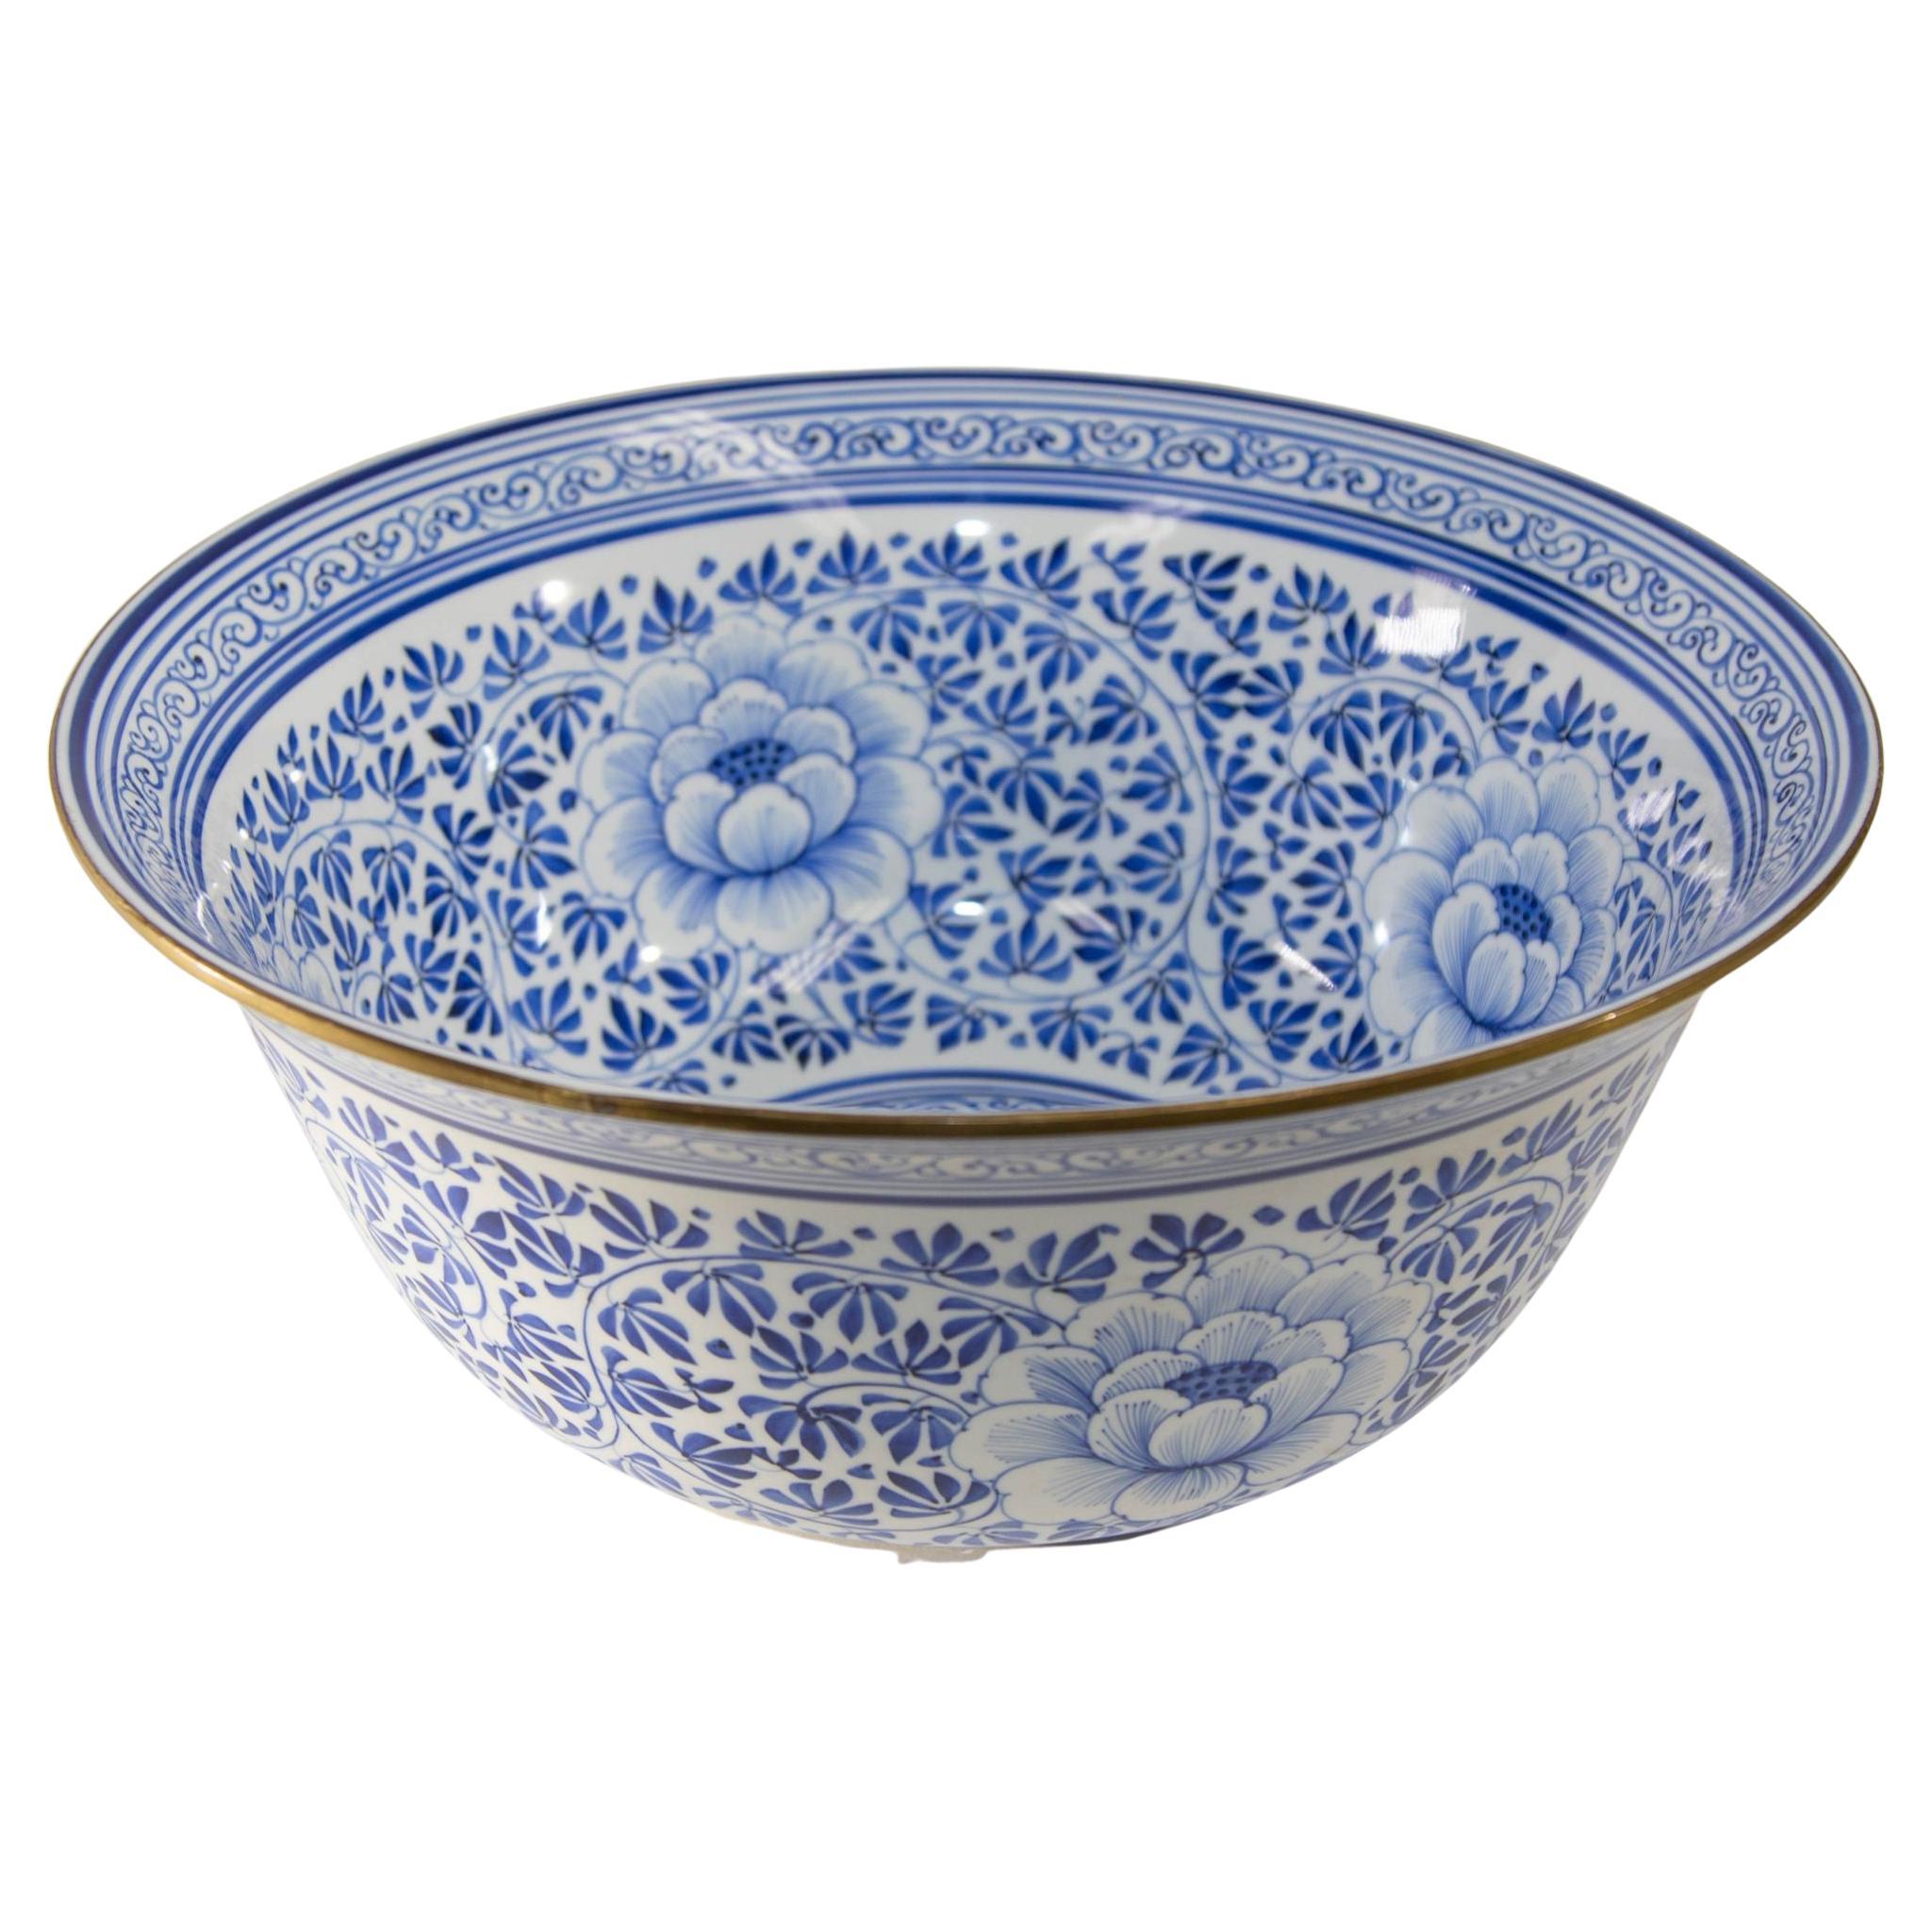 Grand bol en porcelaine bleu et blanc vintage Maitland Smith à motifs floraux